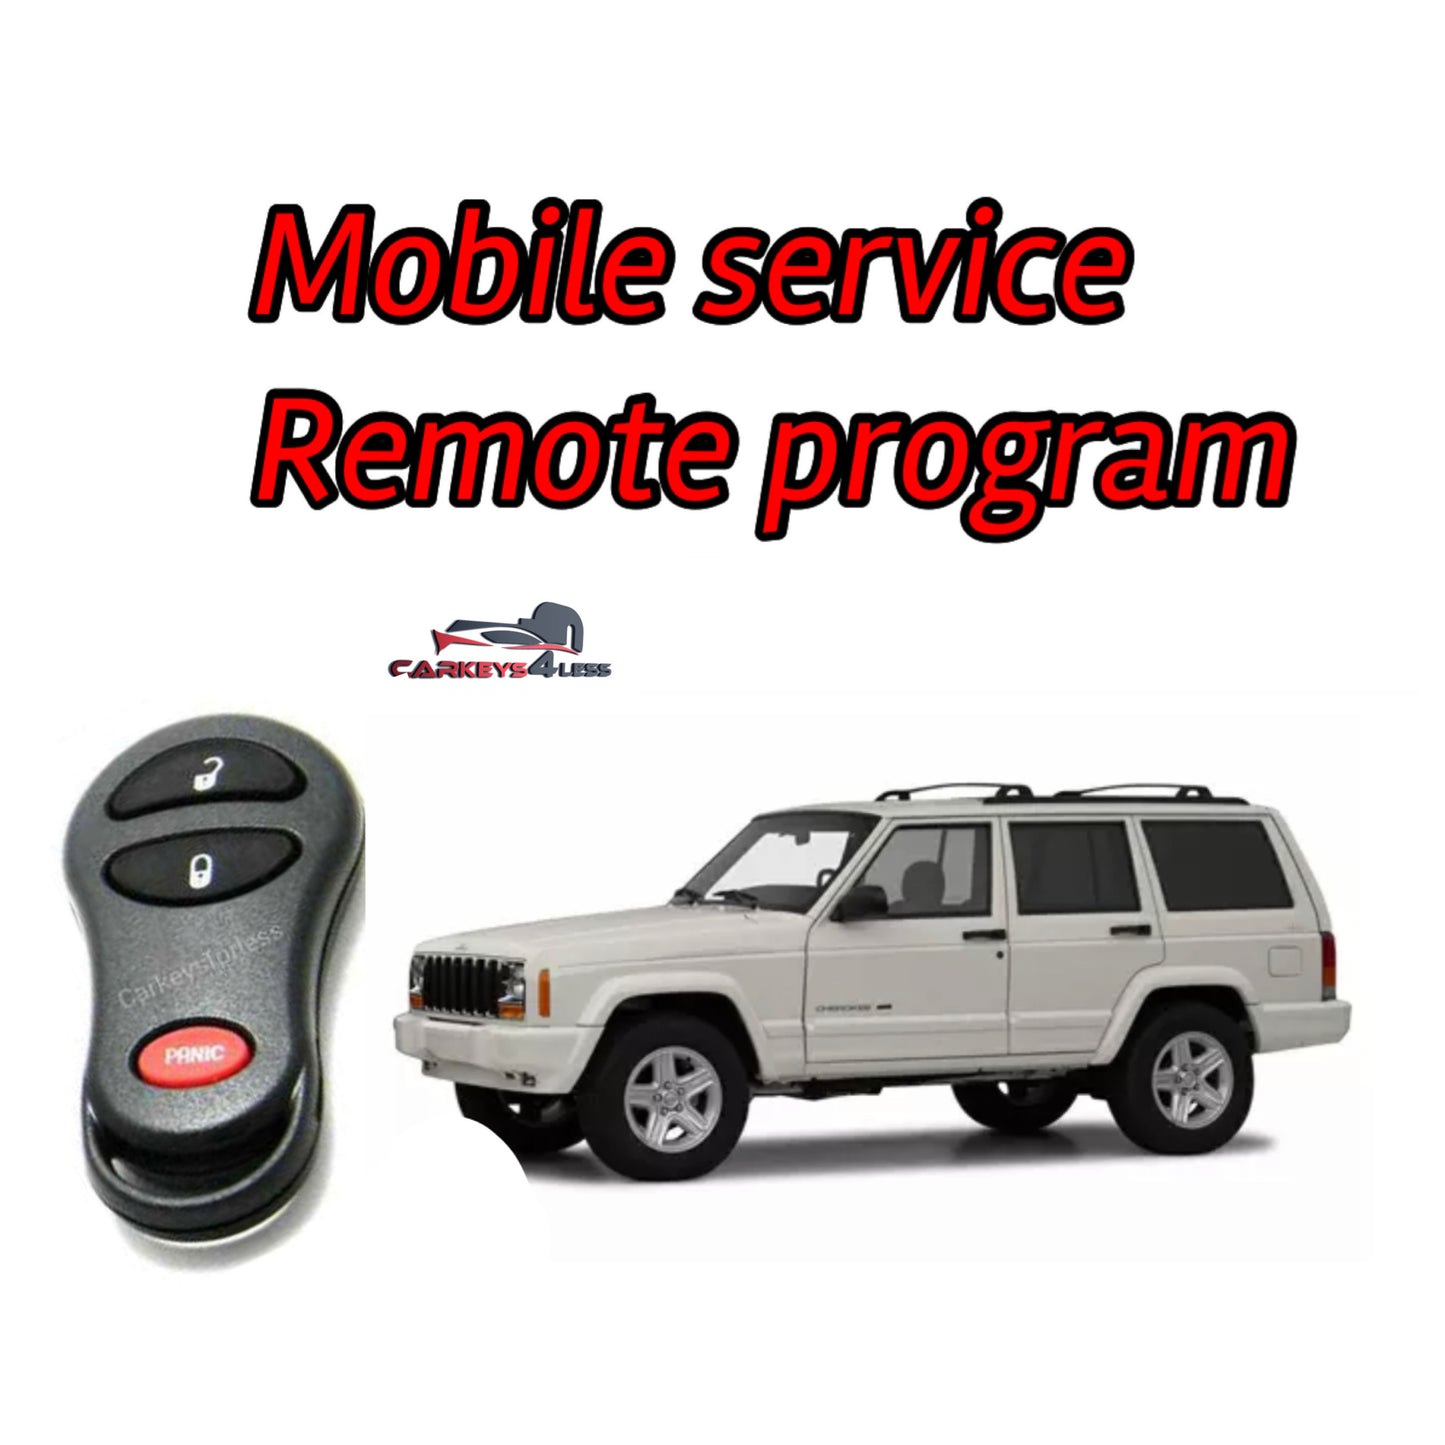 Mobile service for an aftermarket dodge remote program